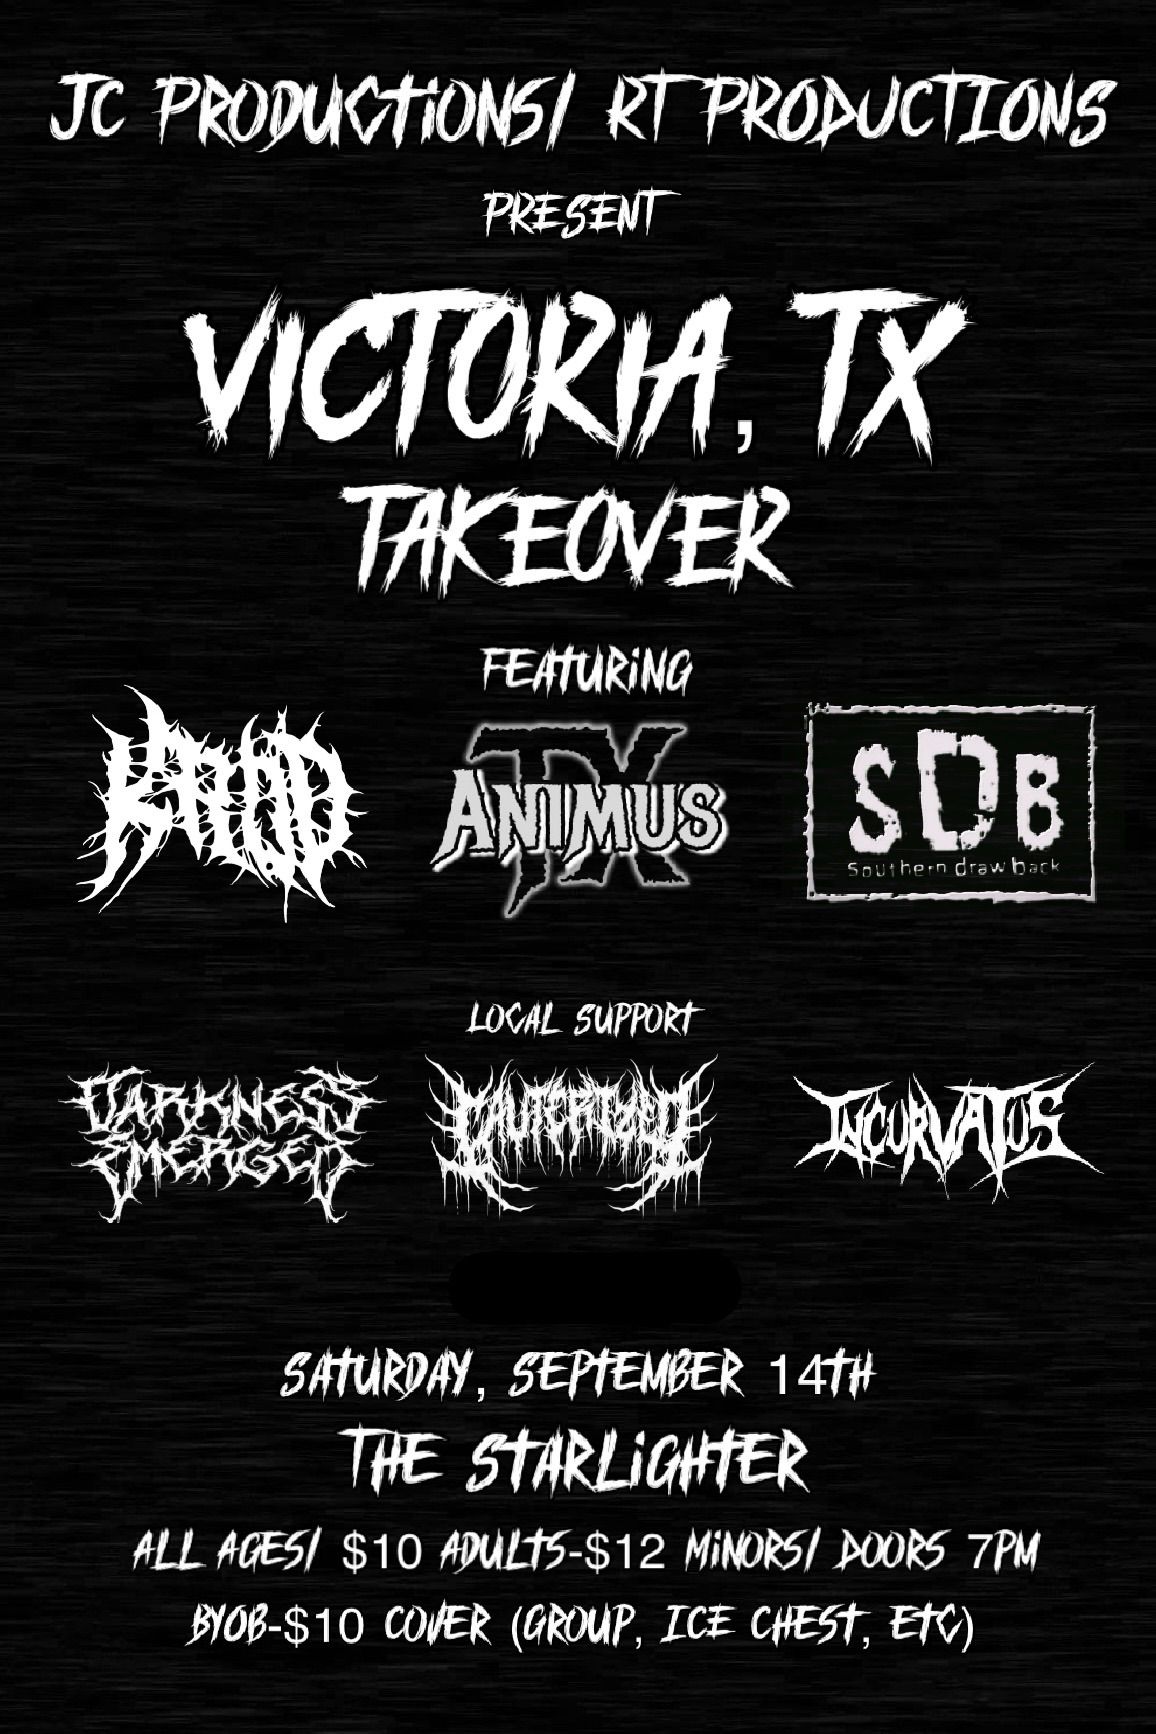 Victoria, TX Takeover!